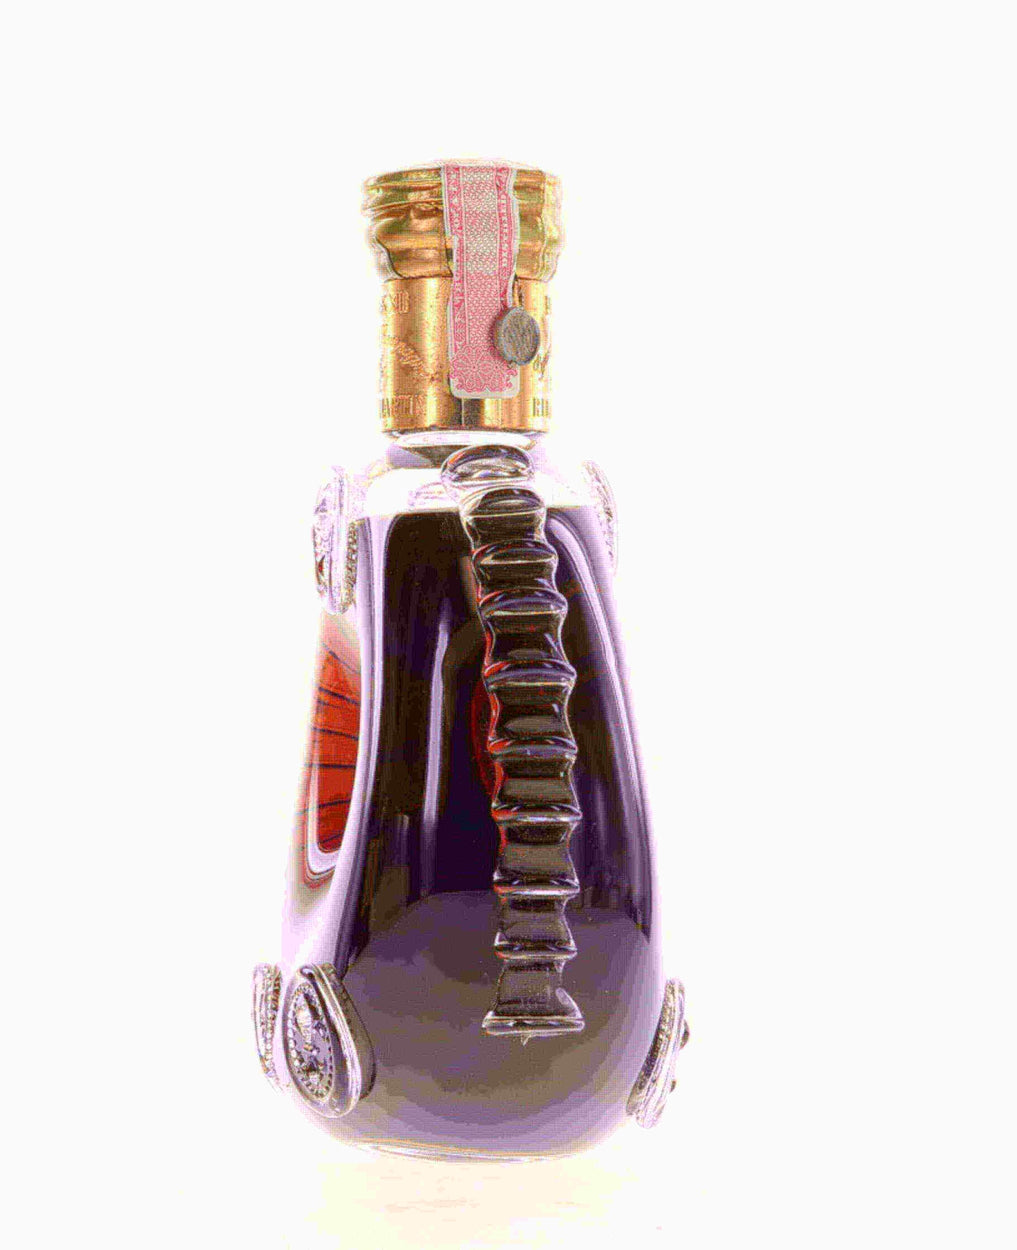 Buy Louis XIII Cognac 1970s Online - Flaskfinewines.com